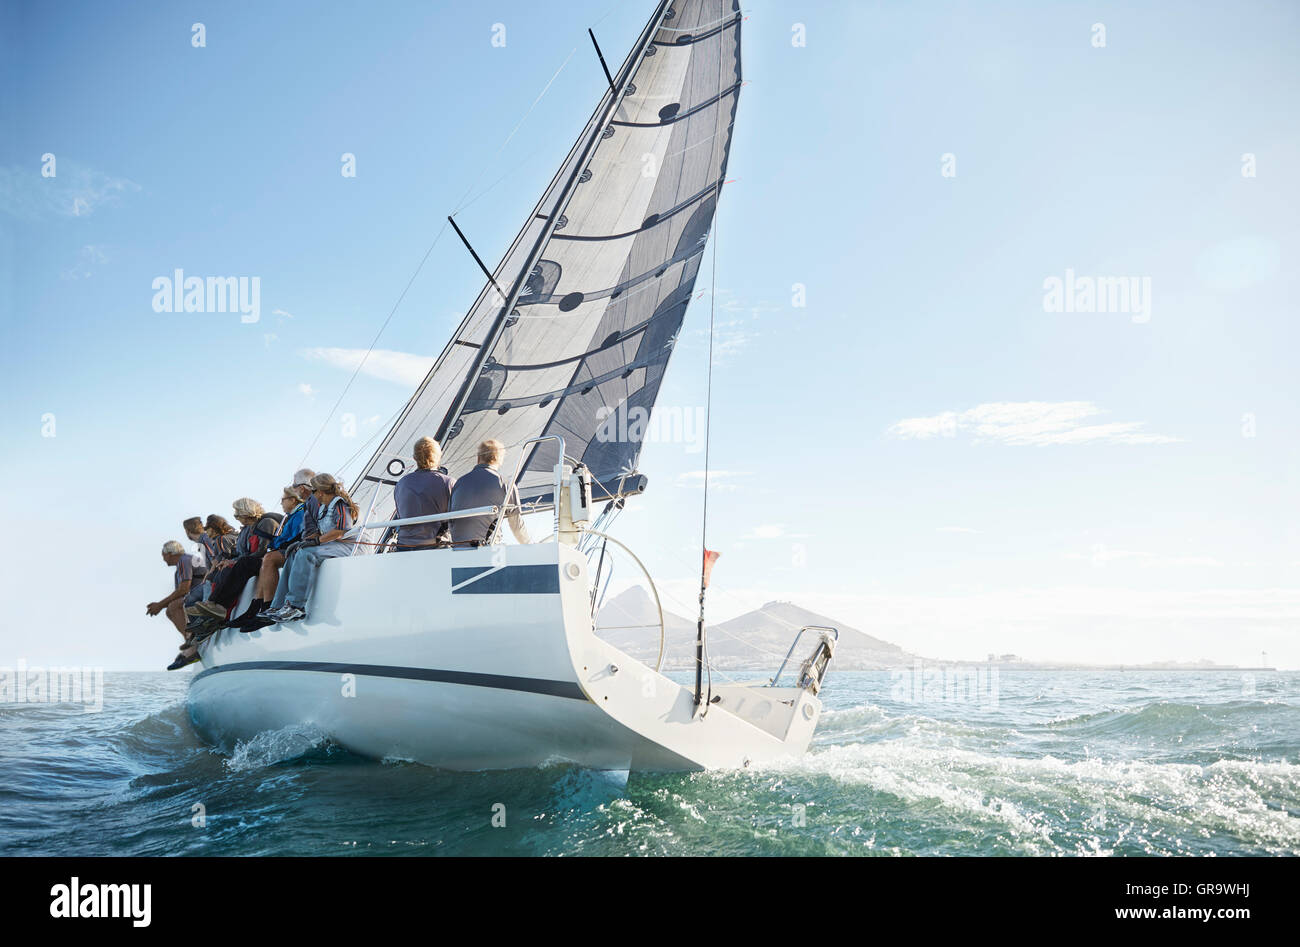 Amis retraités sur voilier under blue sky Banque D'Images